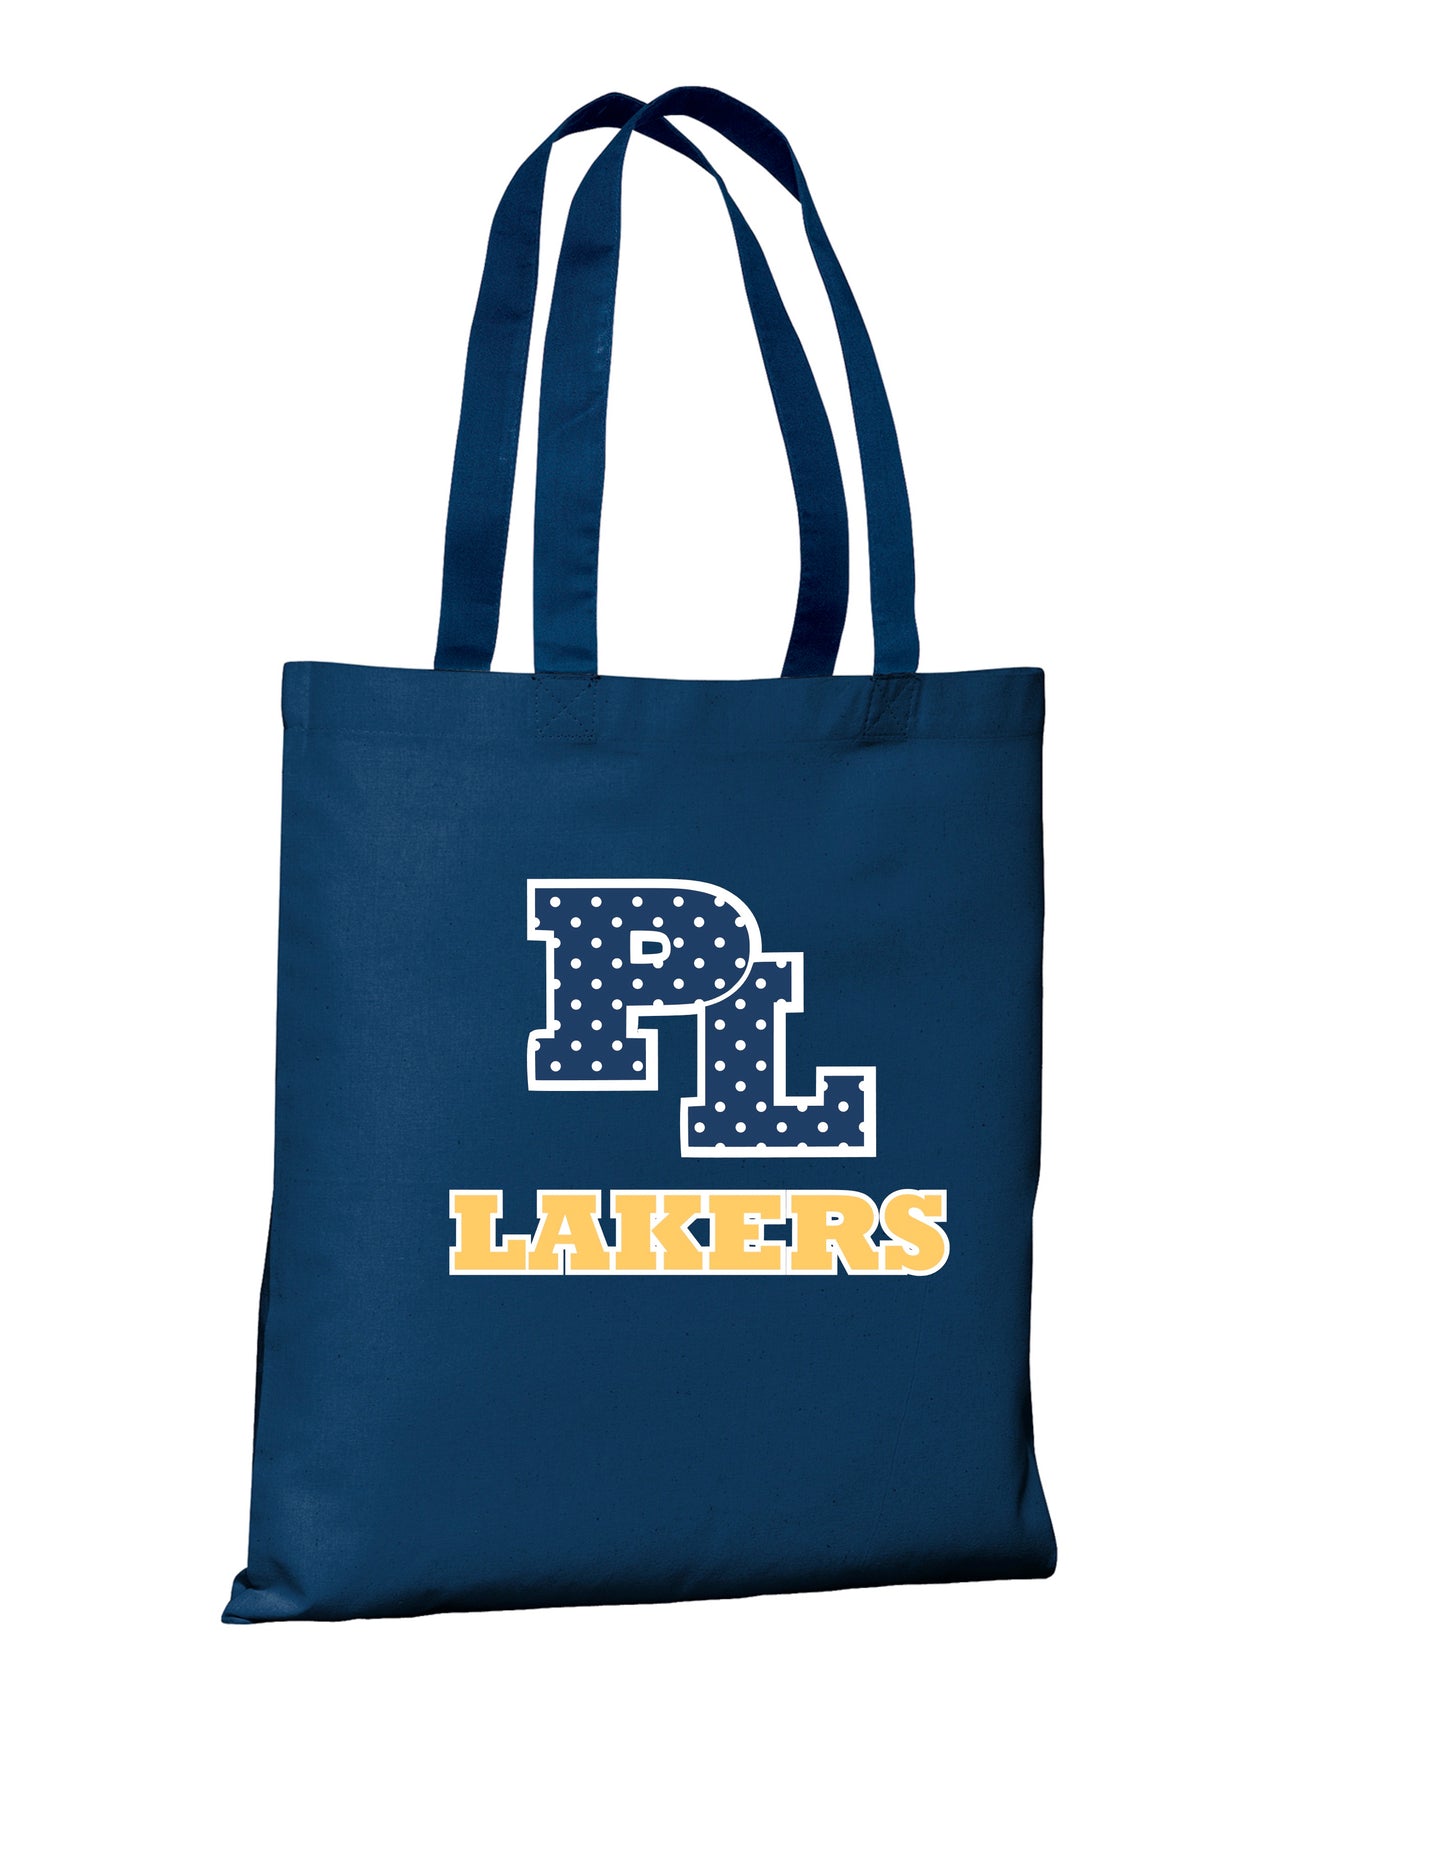 PL Cheer tote bag or PL Lakers Tote bag